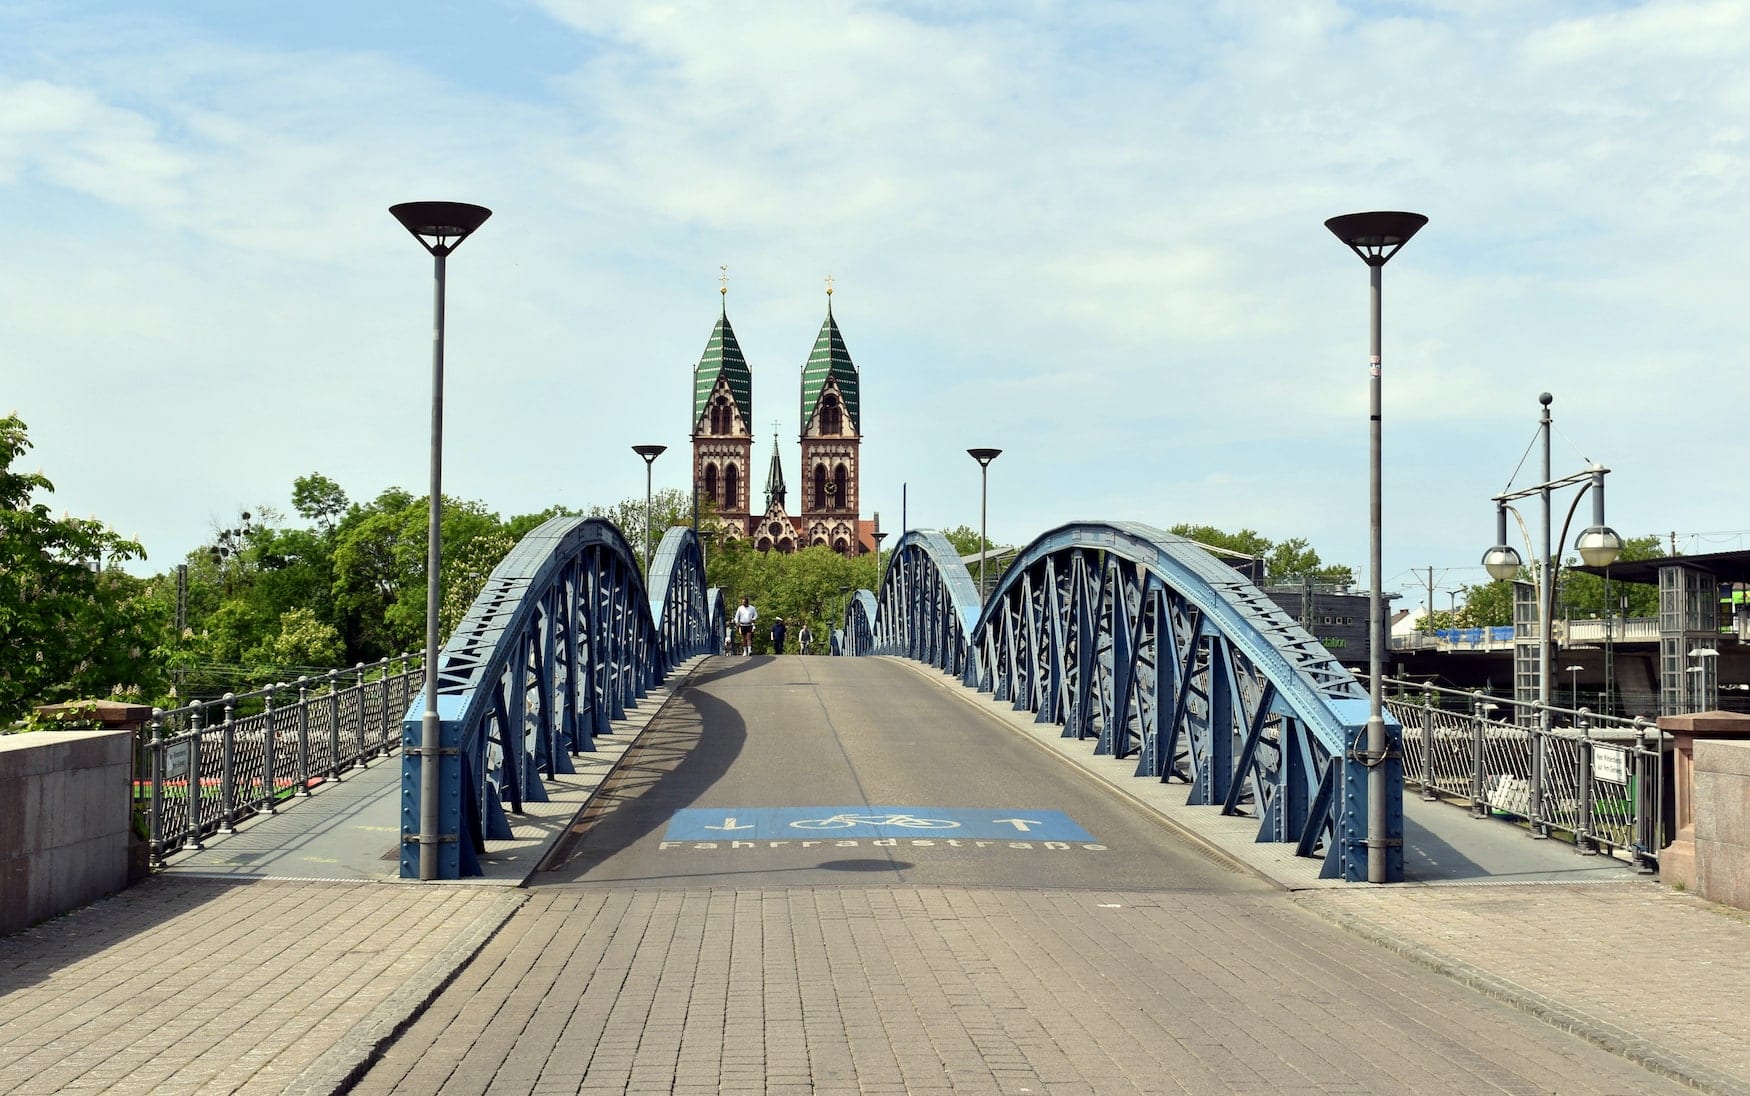 Wiwili Bridge in Freiburg